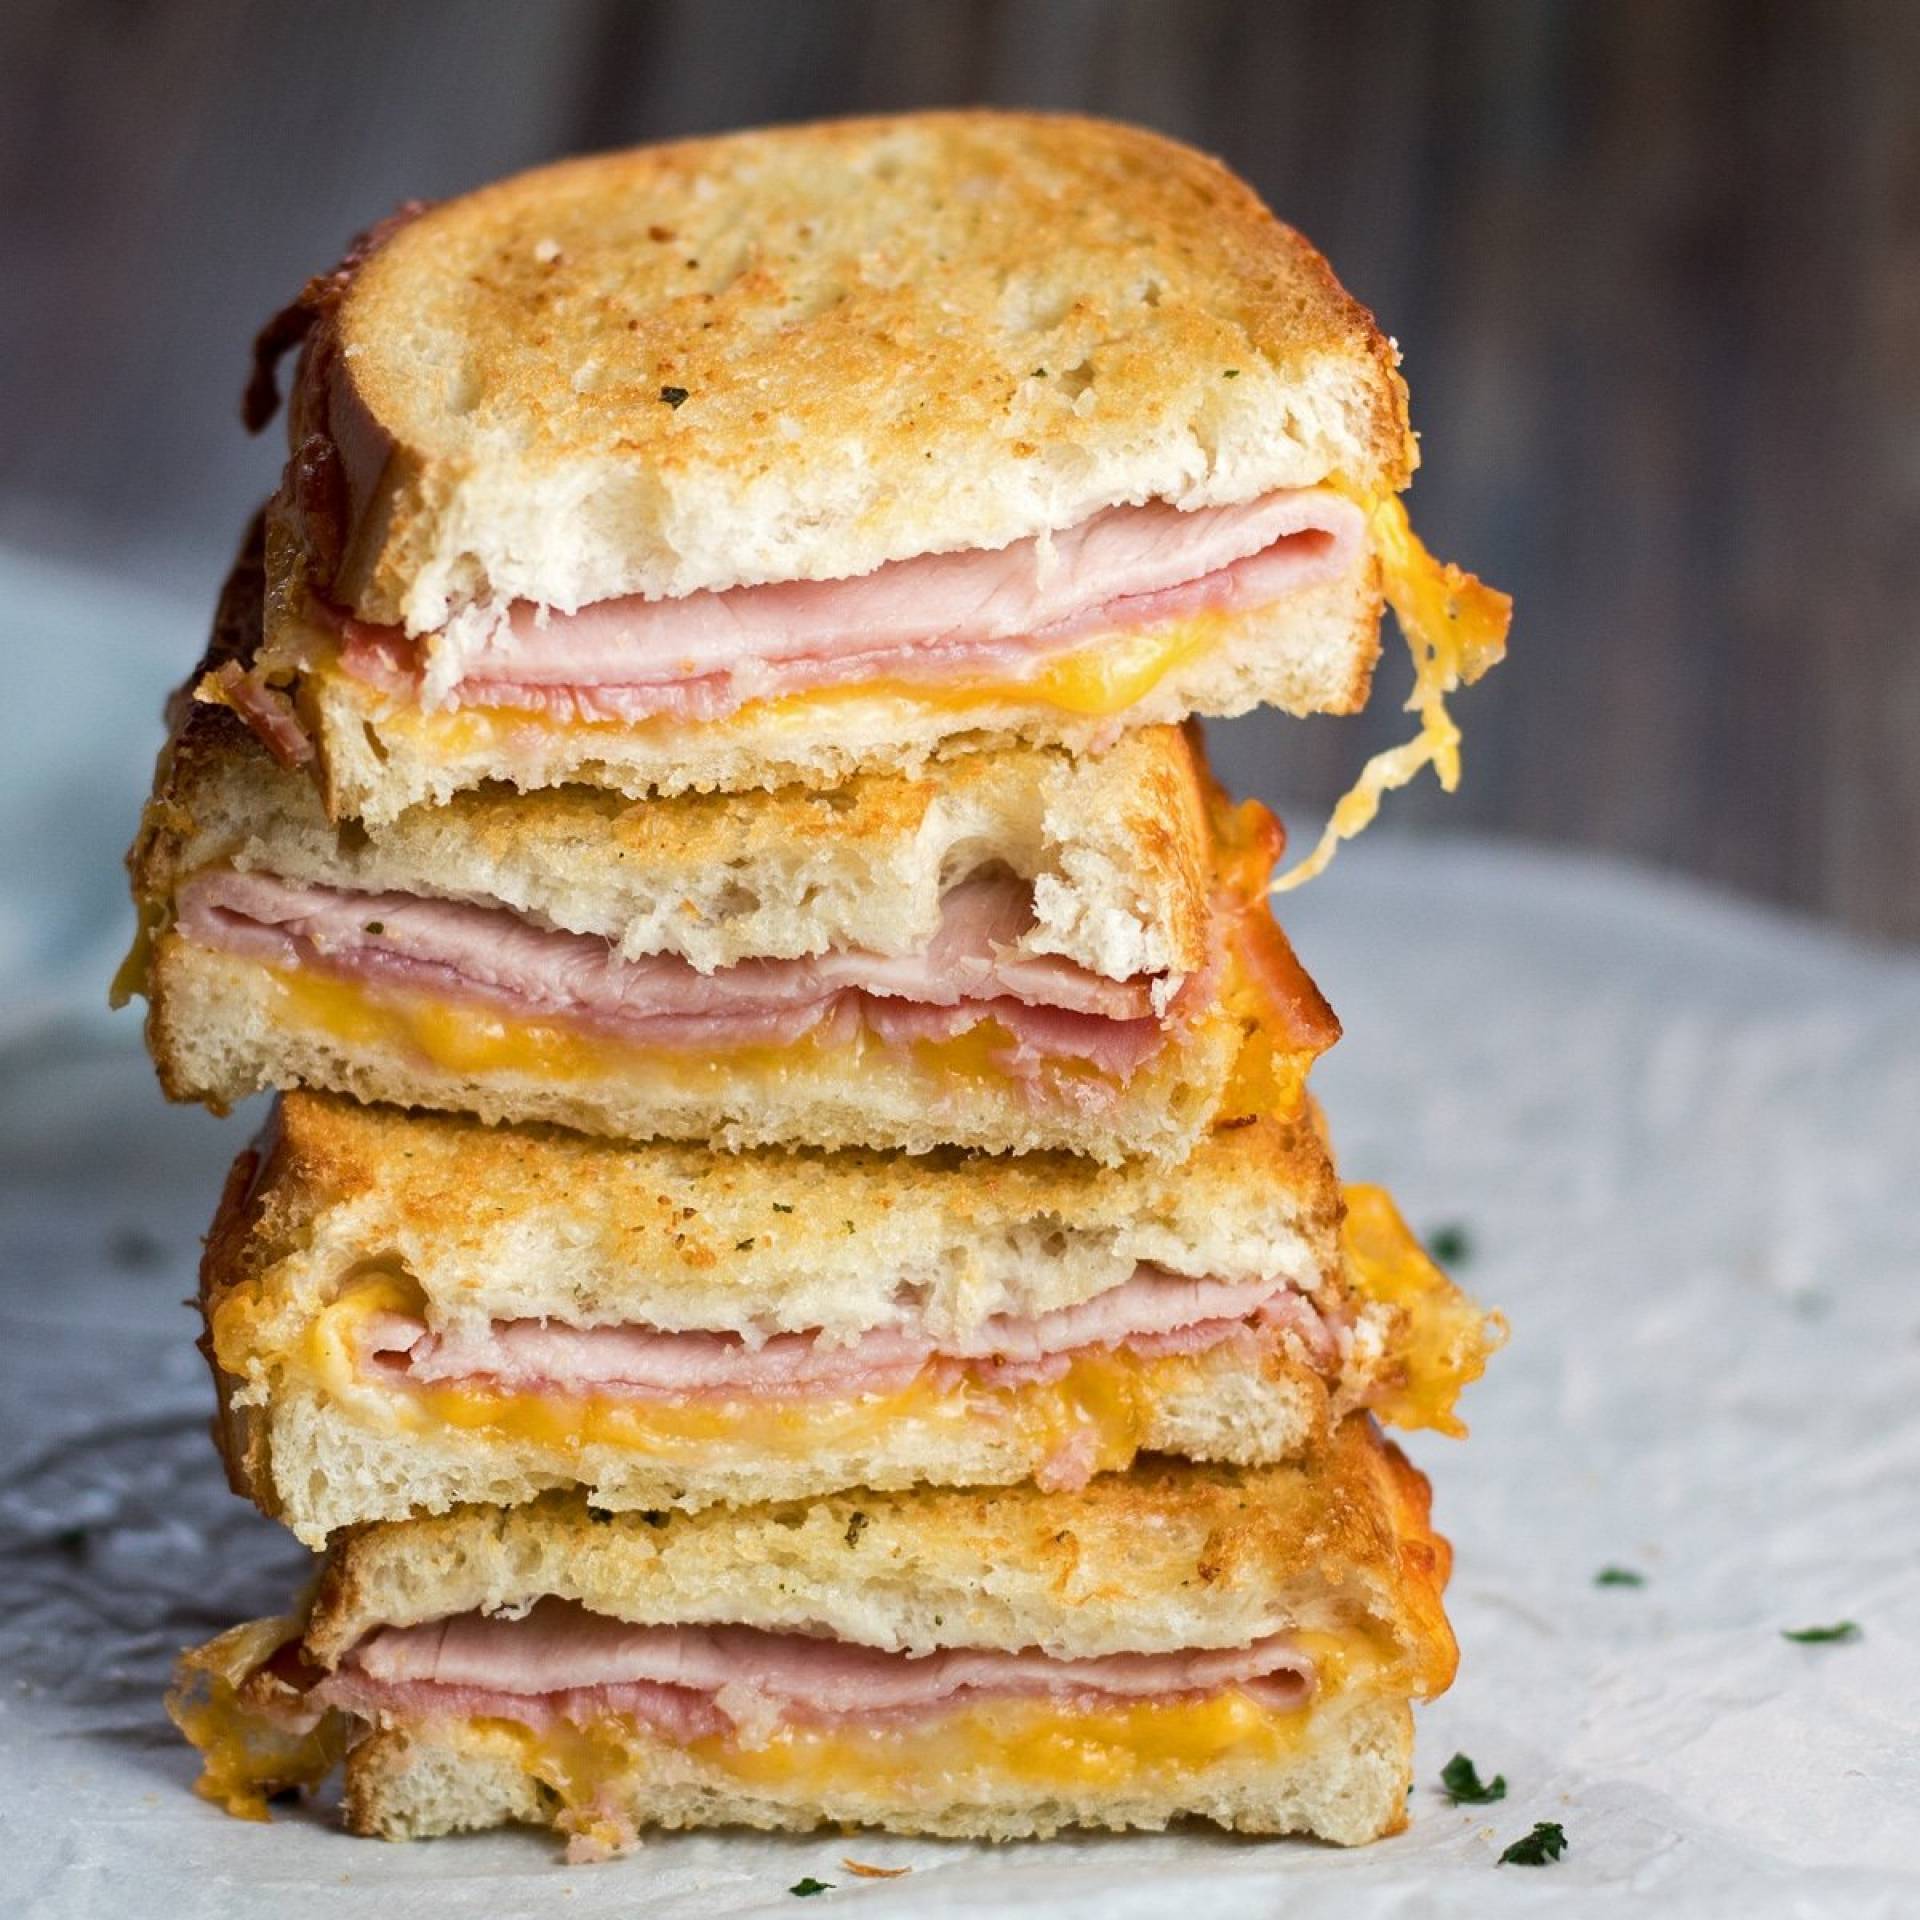 Turkey ham & cheese sandwich